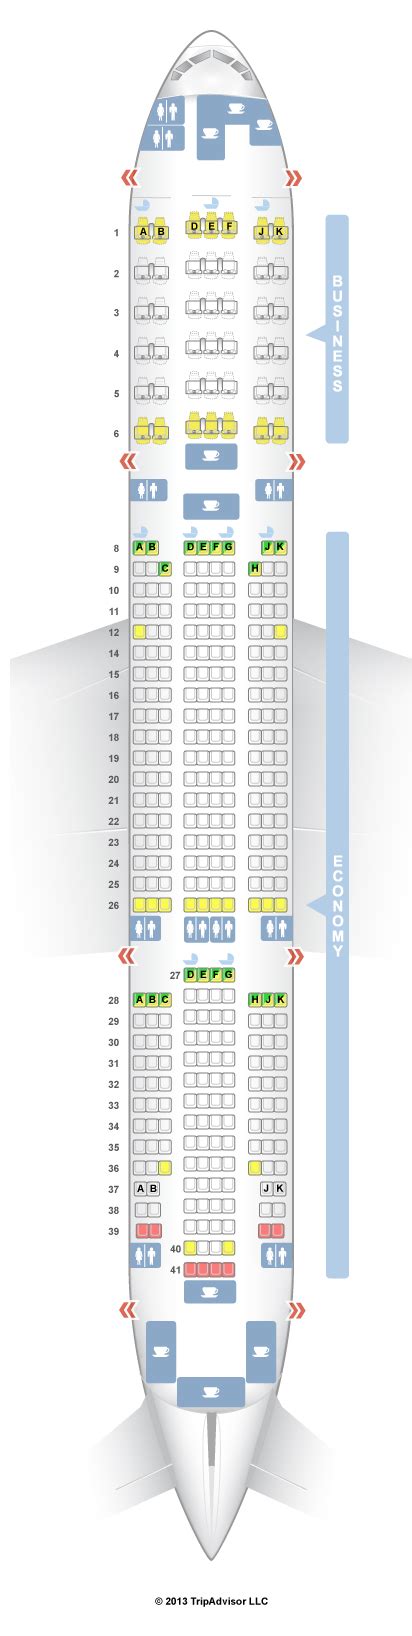 Seatguru Seat Map Emirates